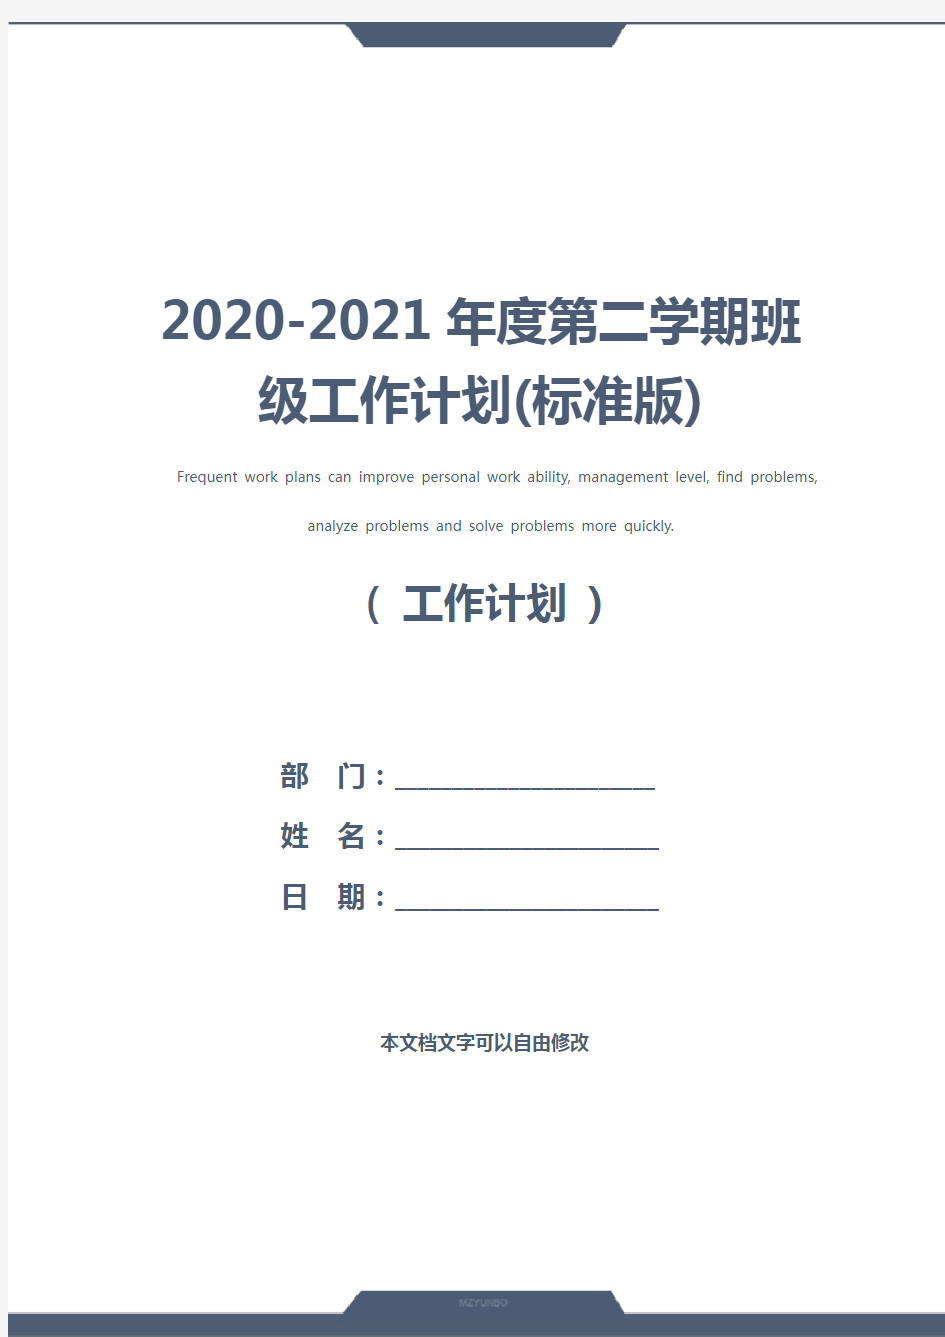 2020-2021年度第二学期班级工作计划(标准版)